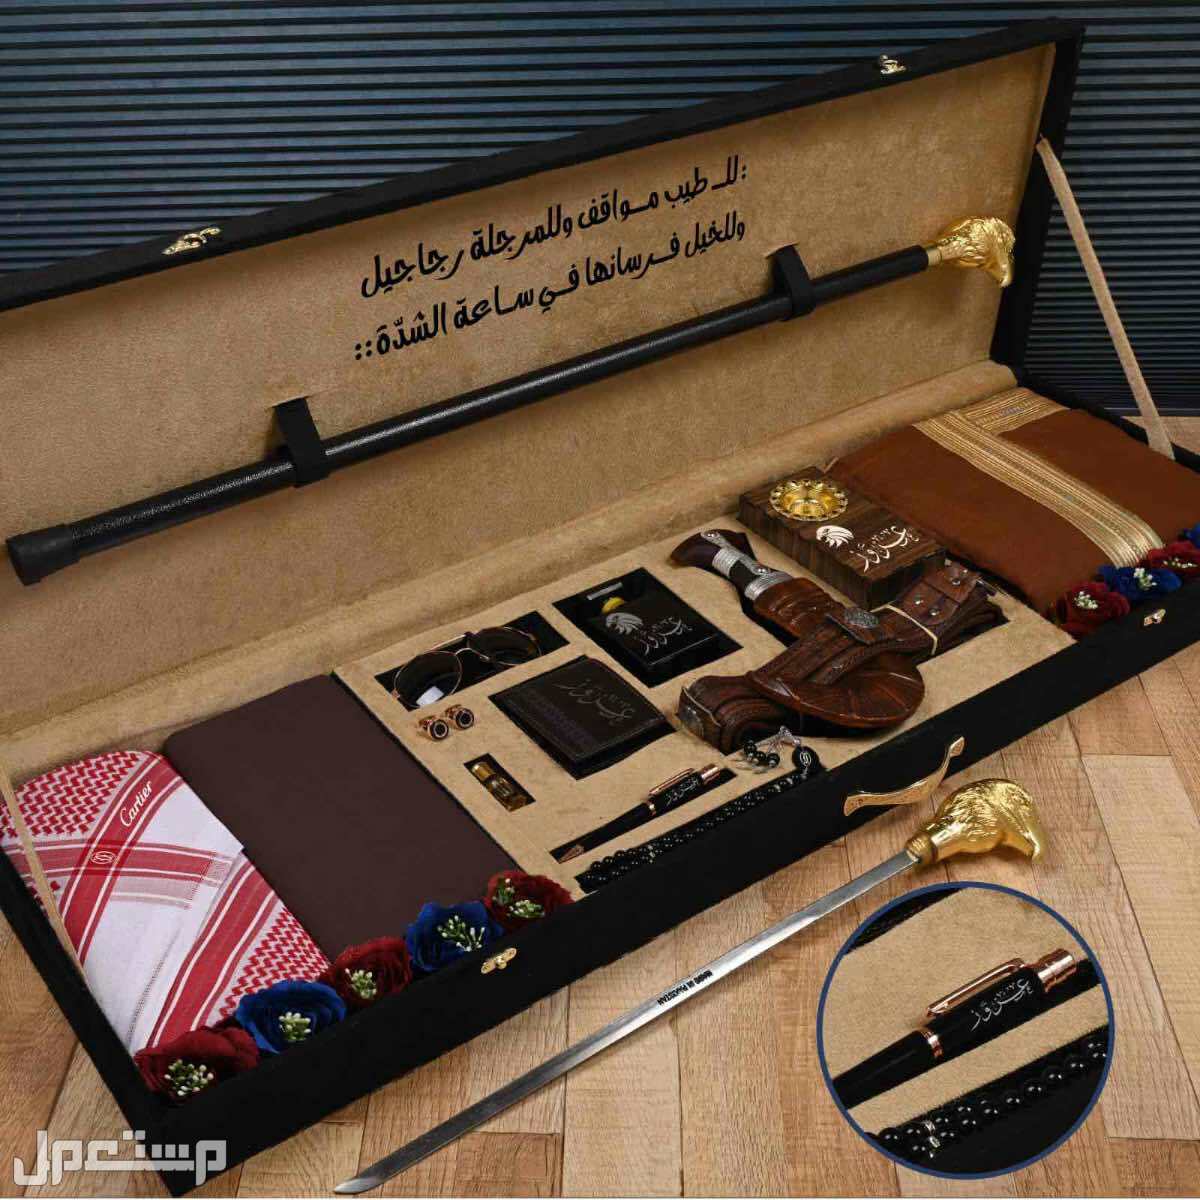 عرض الشيوخ بوكس رجالي ماركه كارتير جيفنشي قماش شماغ مشلح خنجر محفظه قلم كبك جده في جدة بسعر 500 ريال سعودي